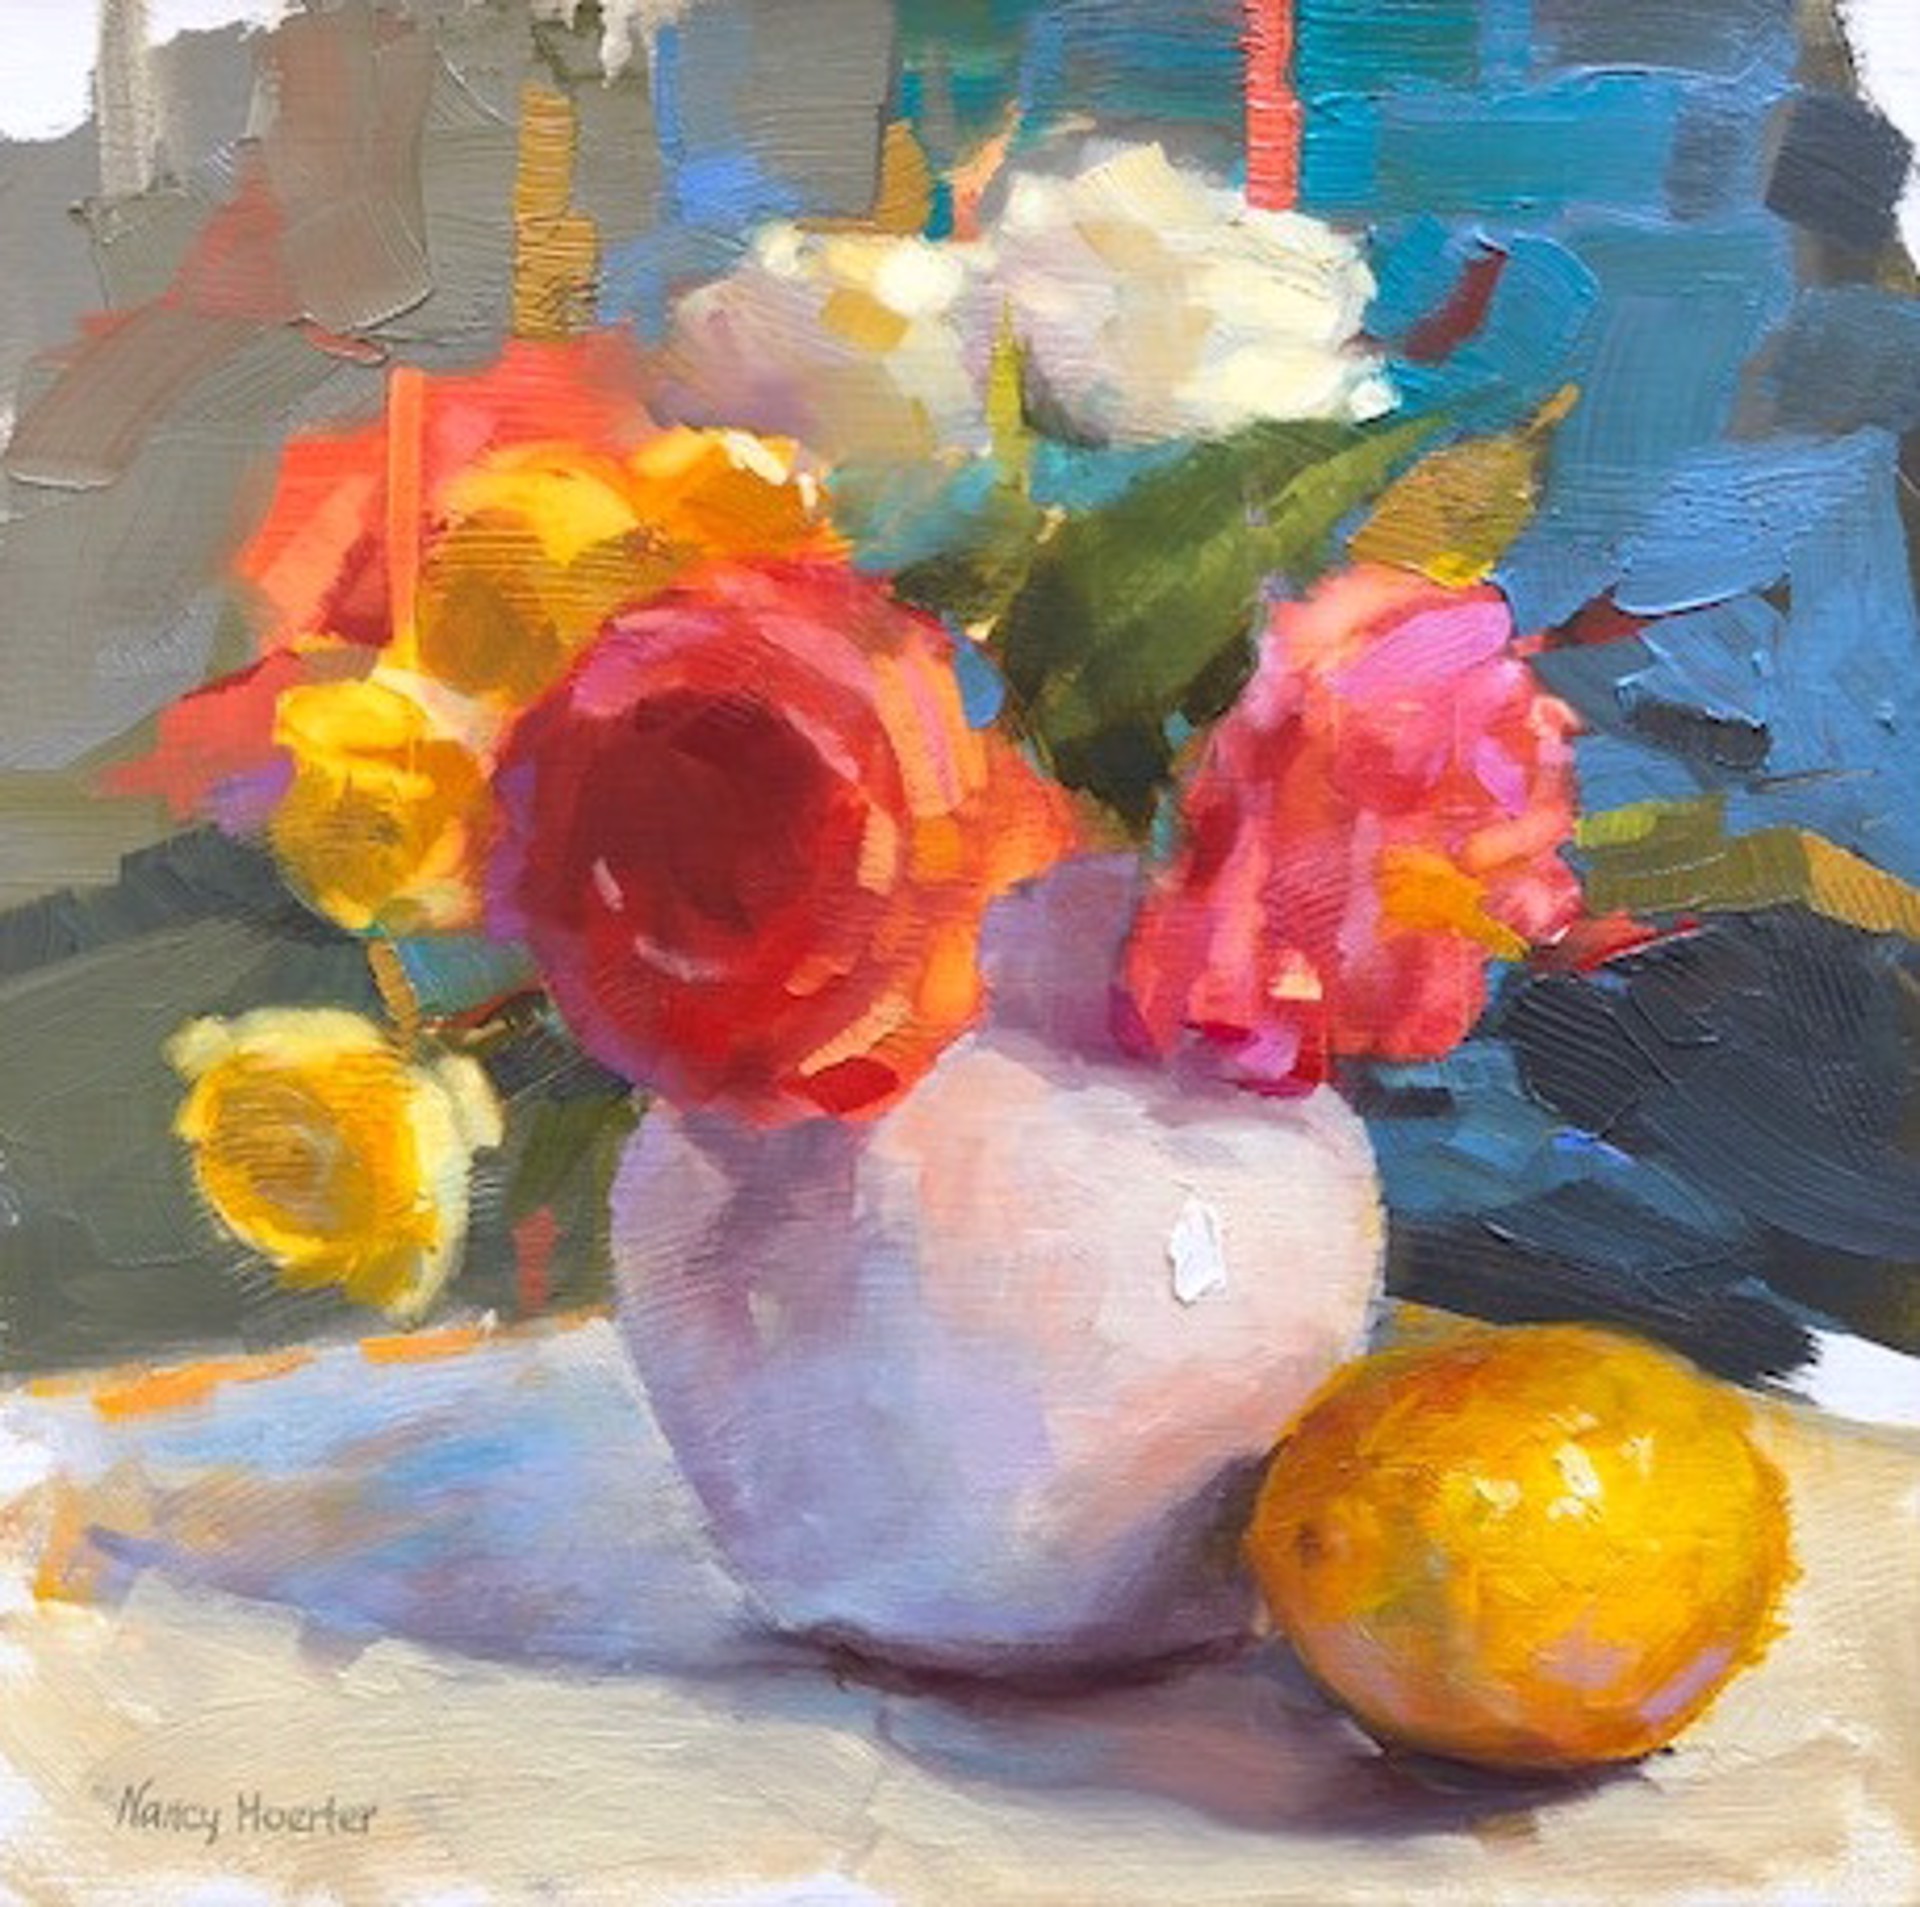 That Little White Vase by Nancy Hoerter